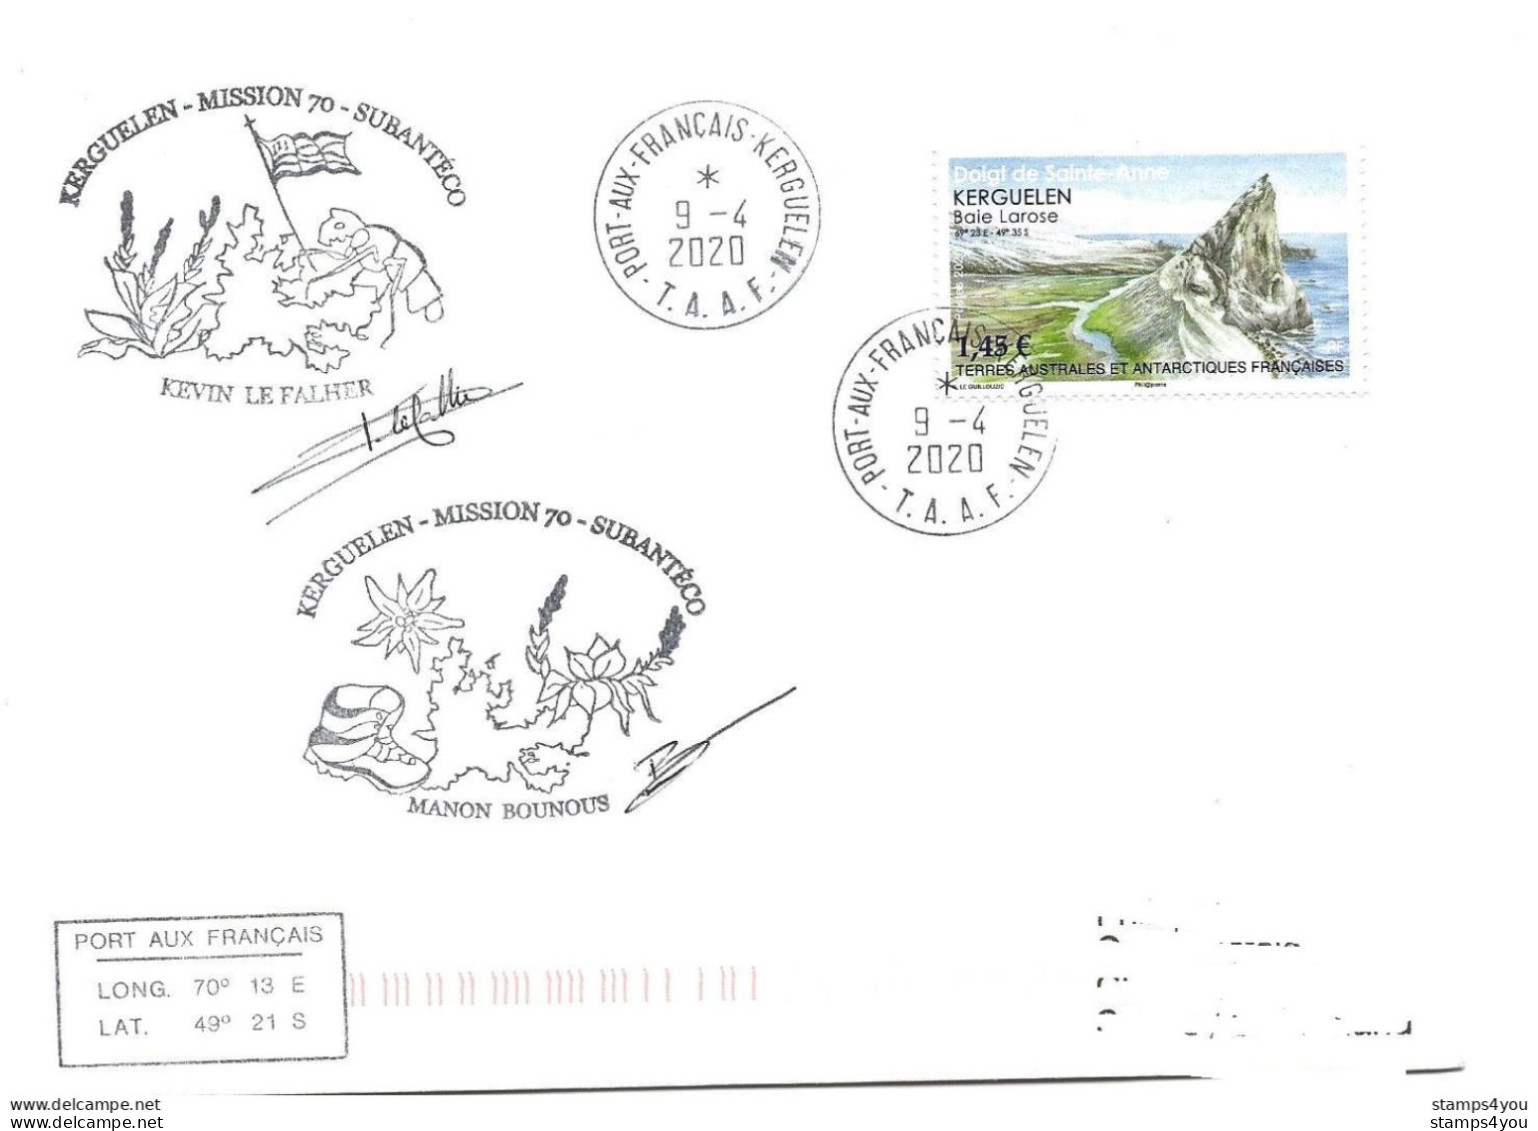 440 - 15 - Enveloppe TAAF Kerguelen - Cachets Illustrés Subantéco Mmission 70 - 2020 - Onderzoeksstations